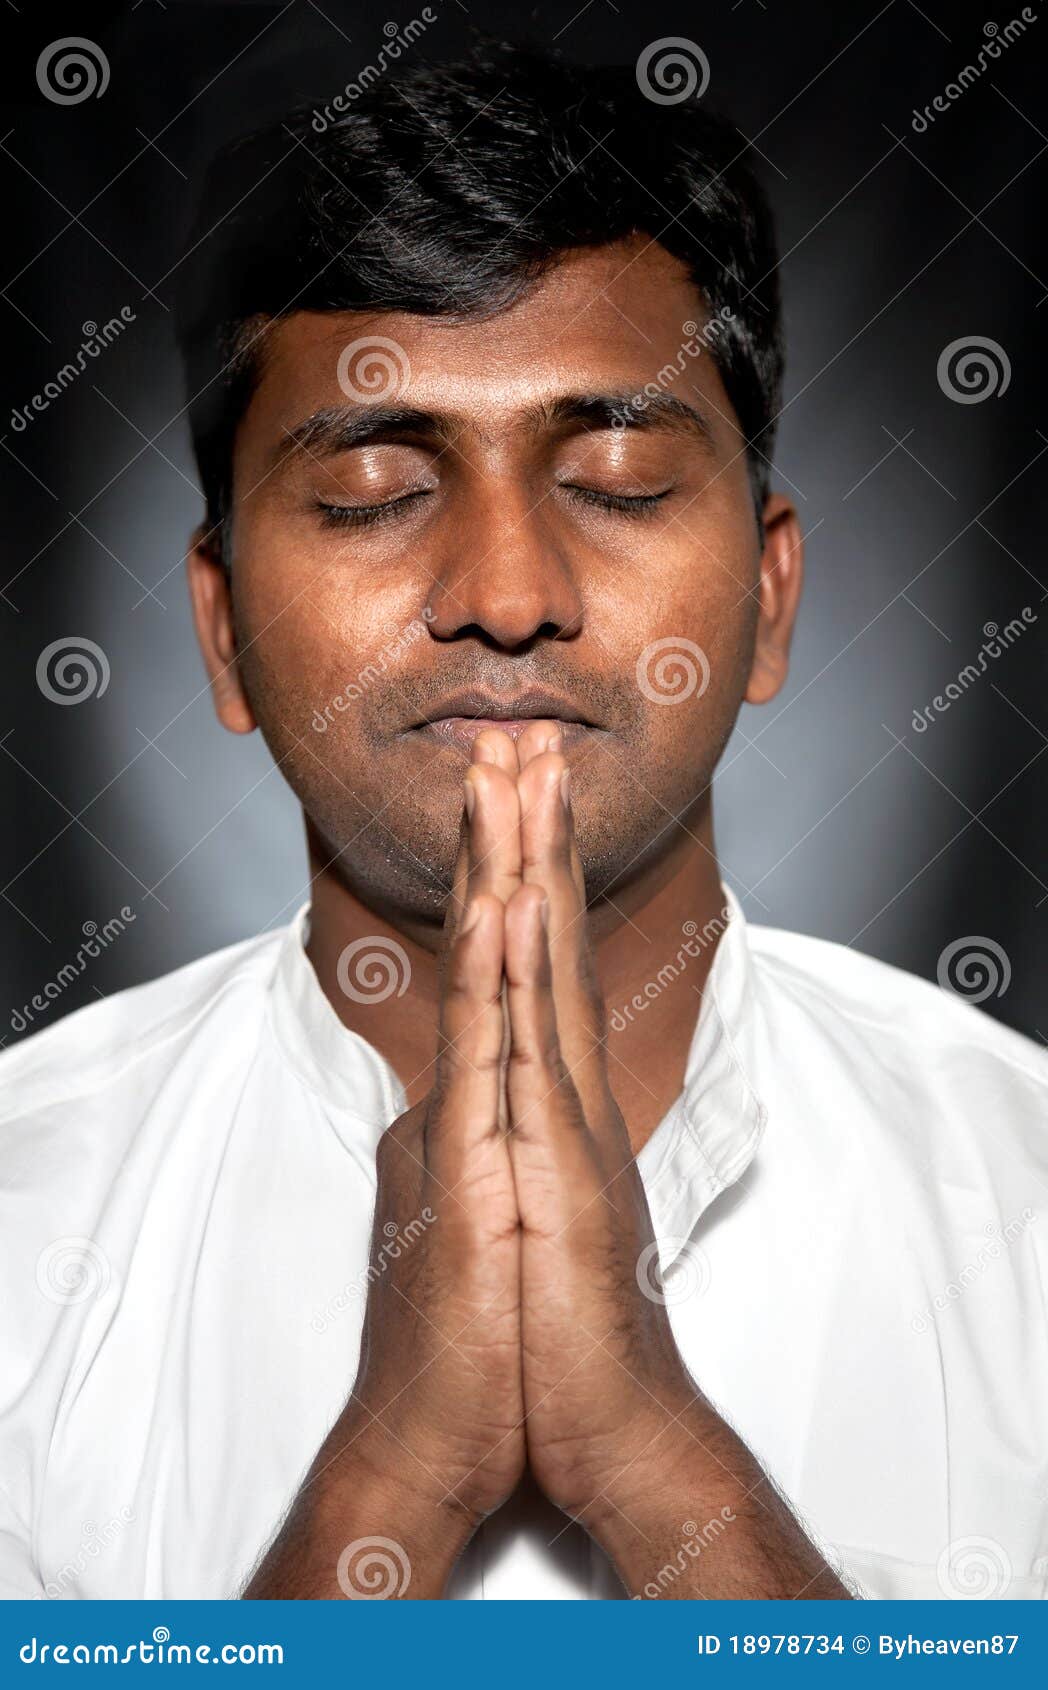 indian-man-praying-18978734.jpg